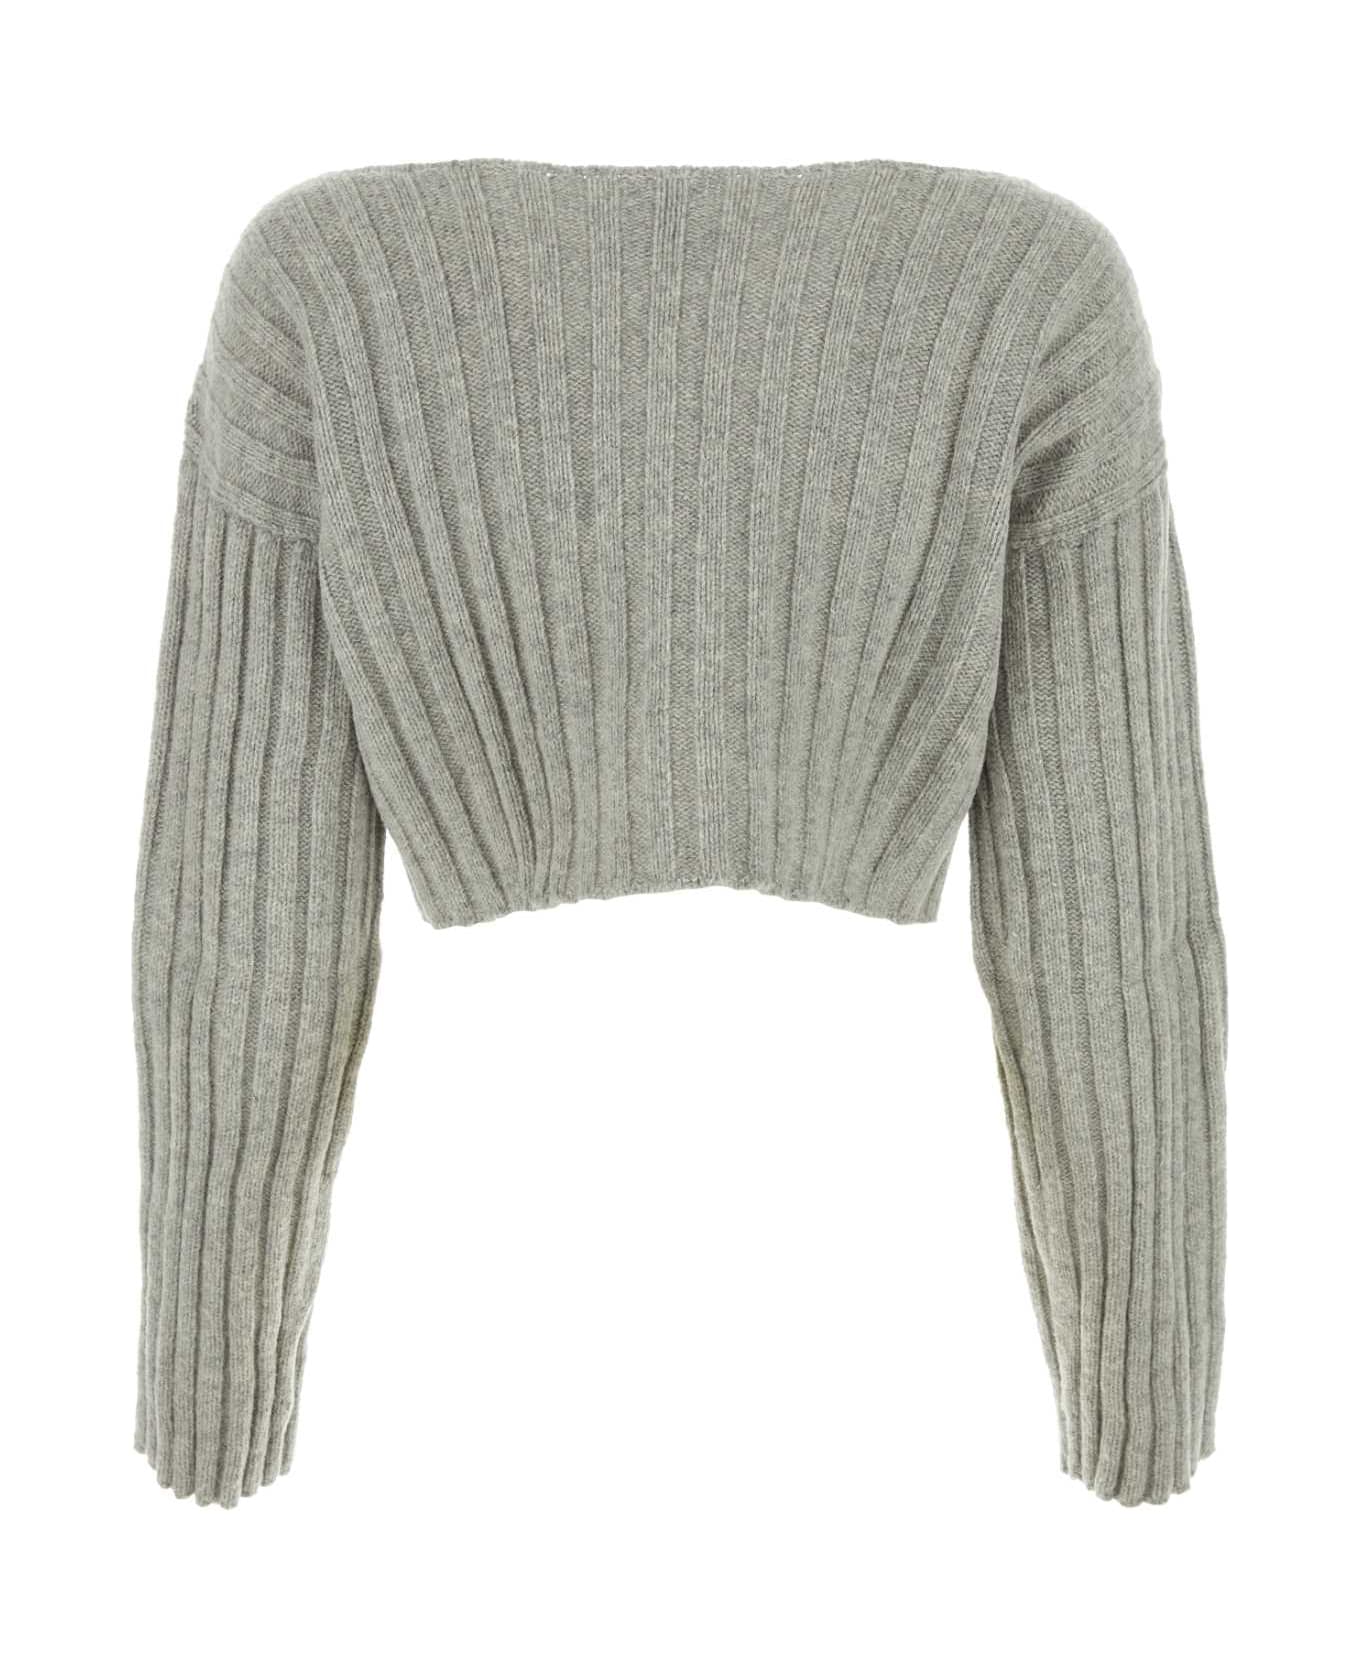 Baserange Melange Grey Wool Blend Sweater - GREYMELANGE